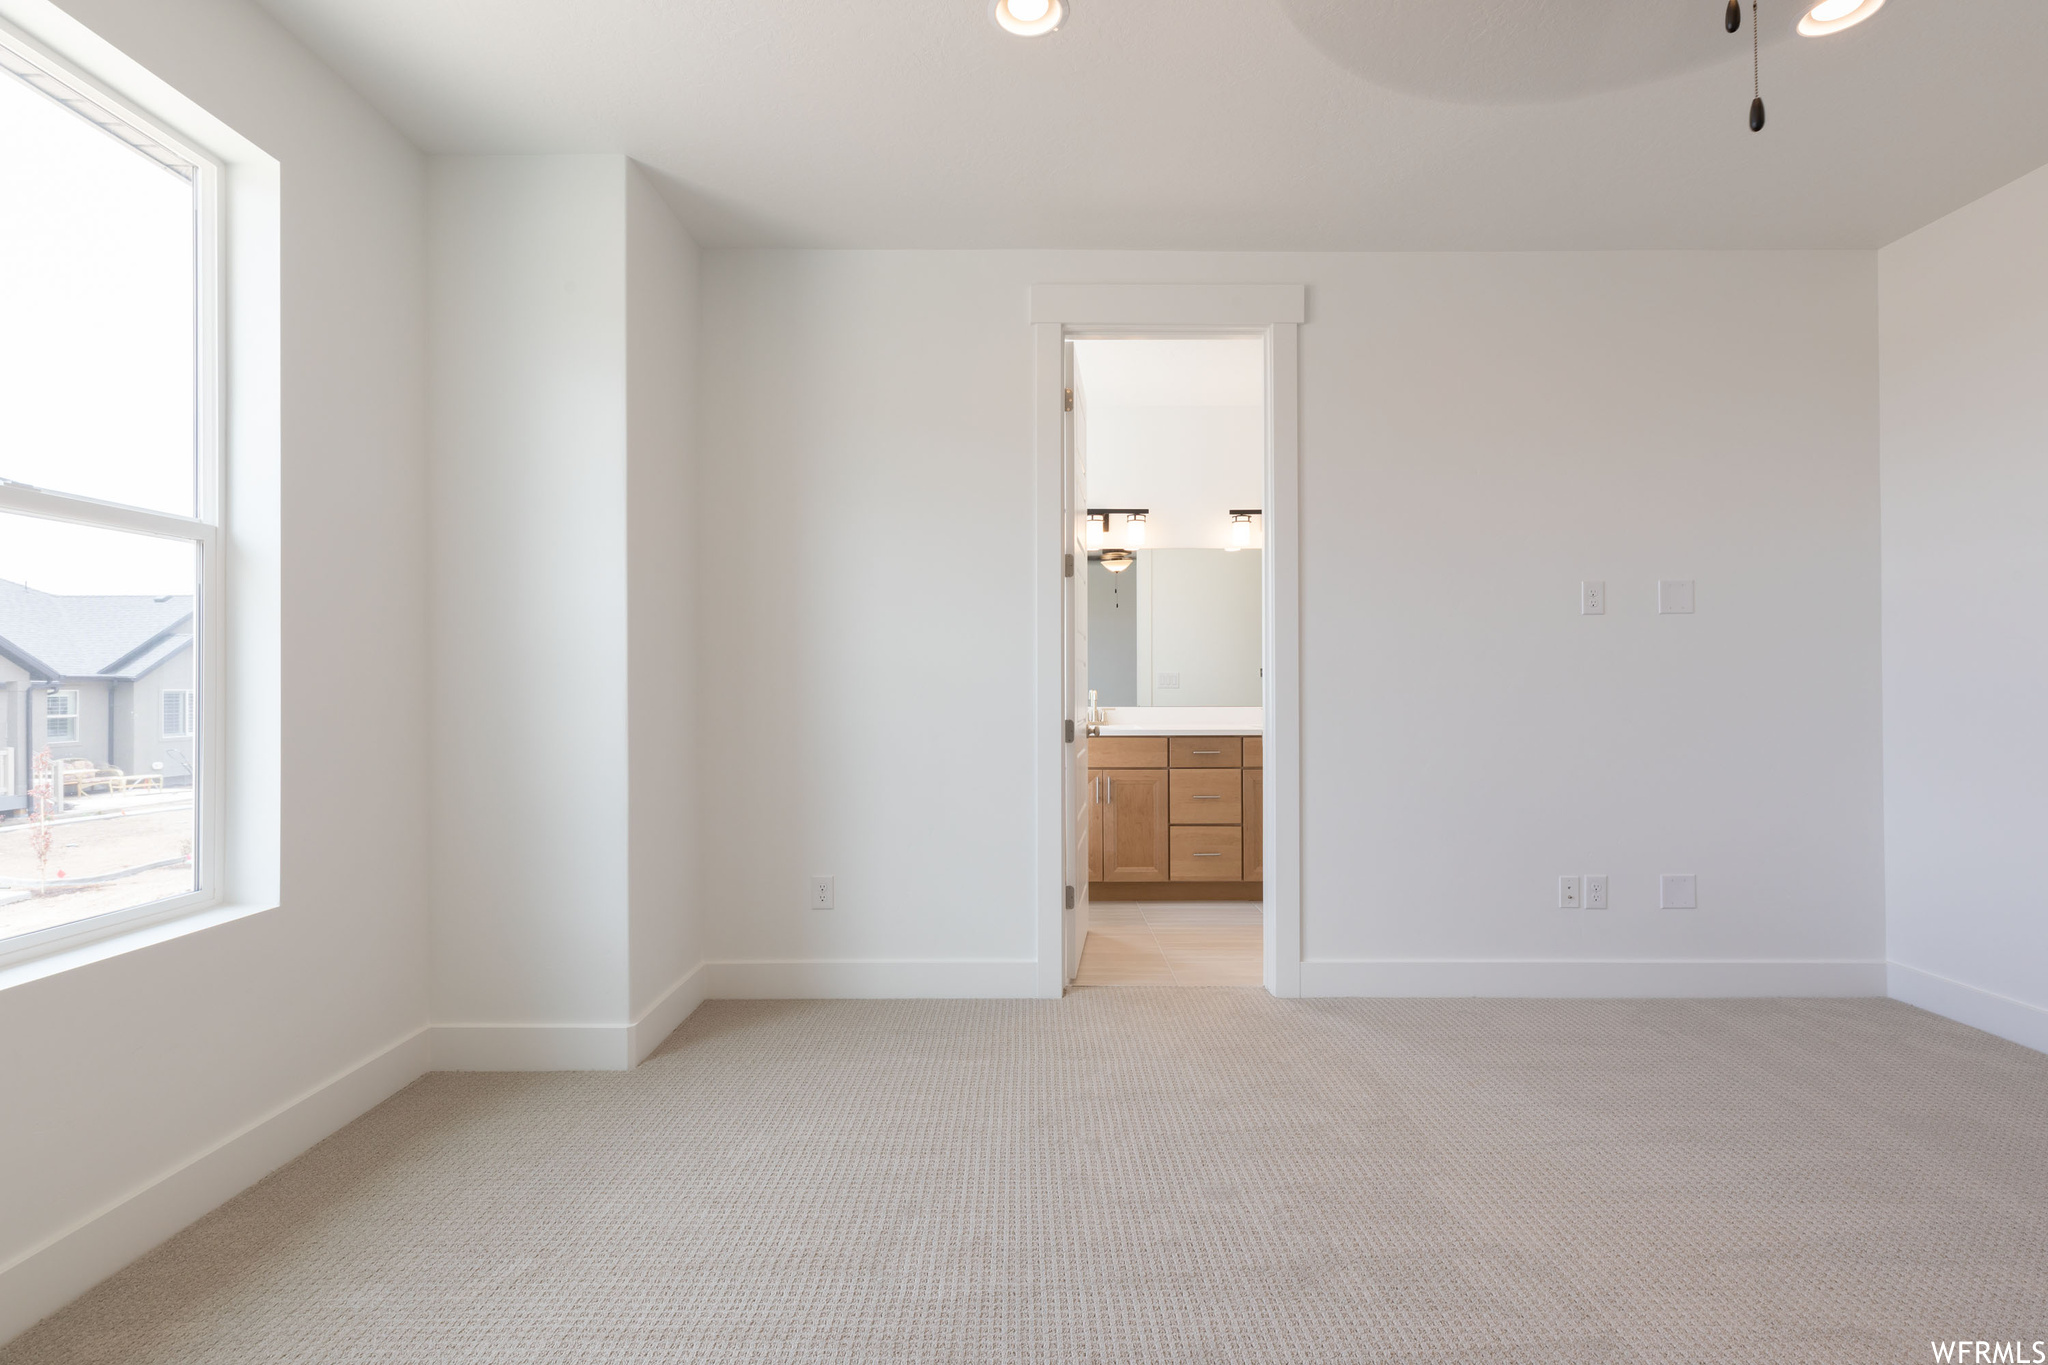 Interior space featuring ensuite bathroom and light carpet